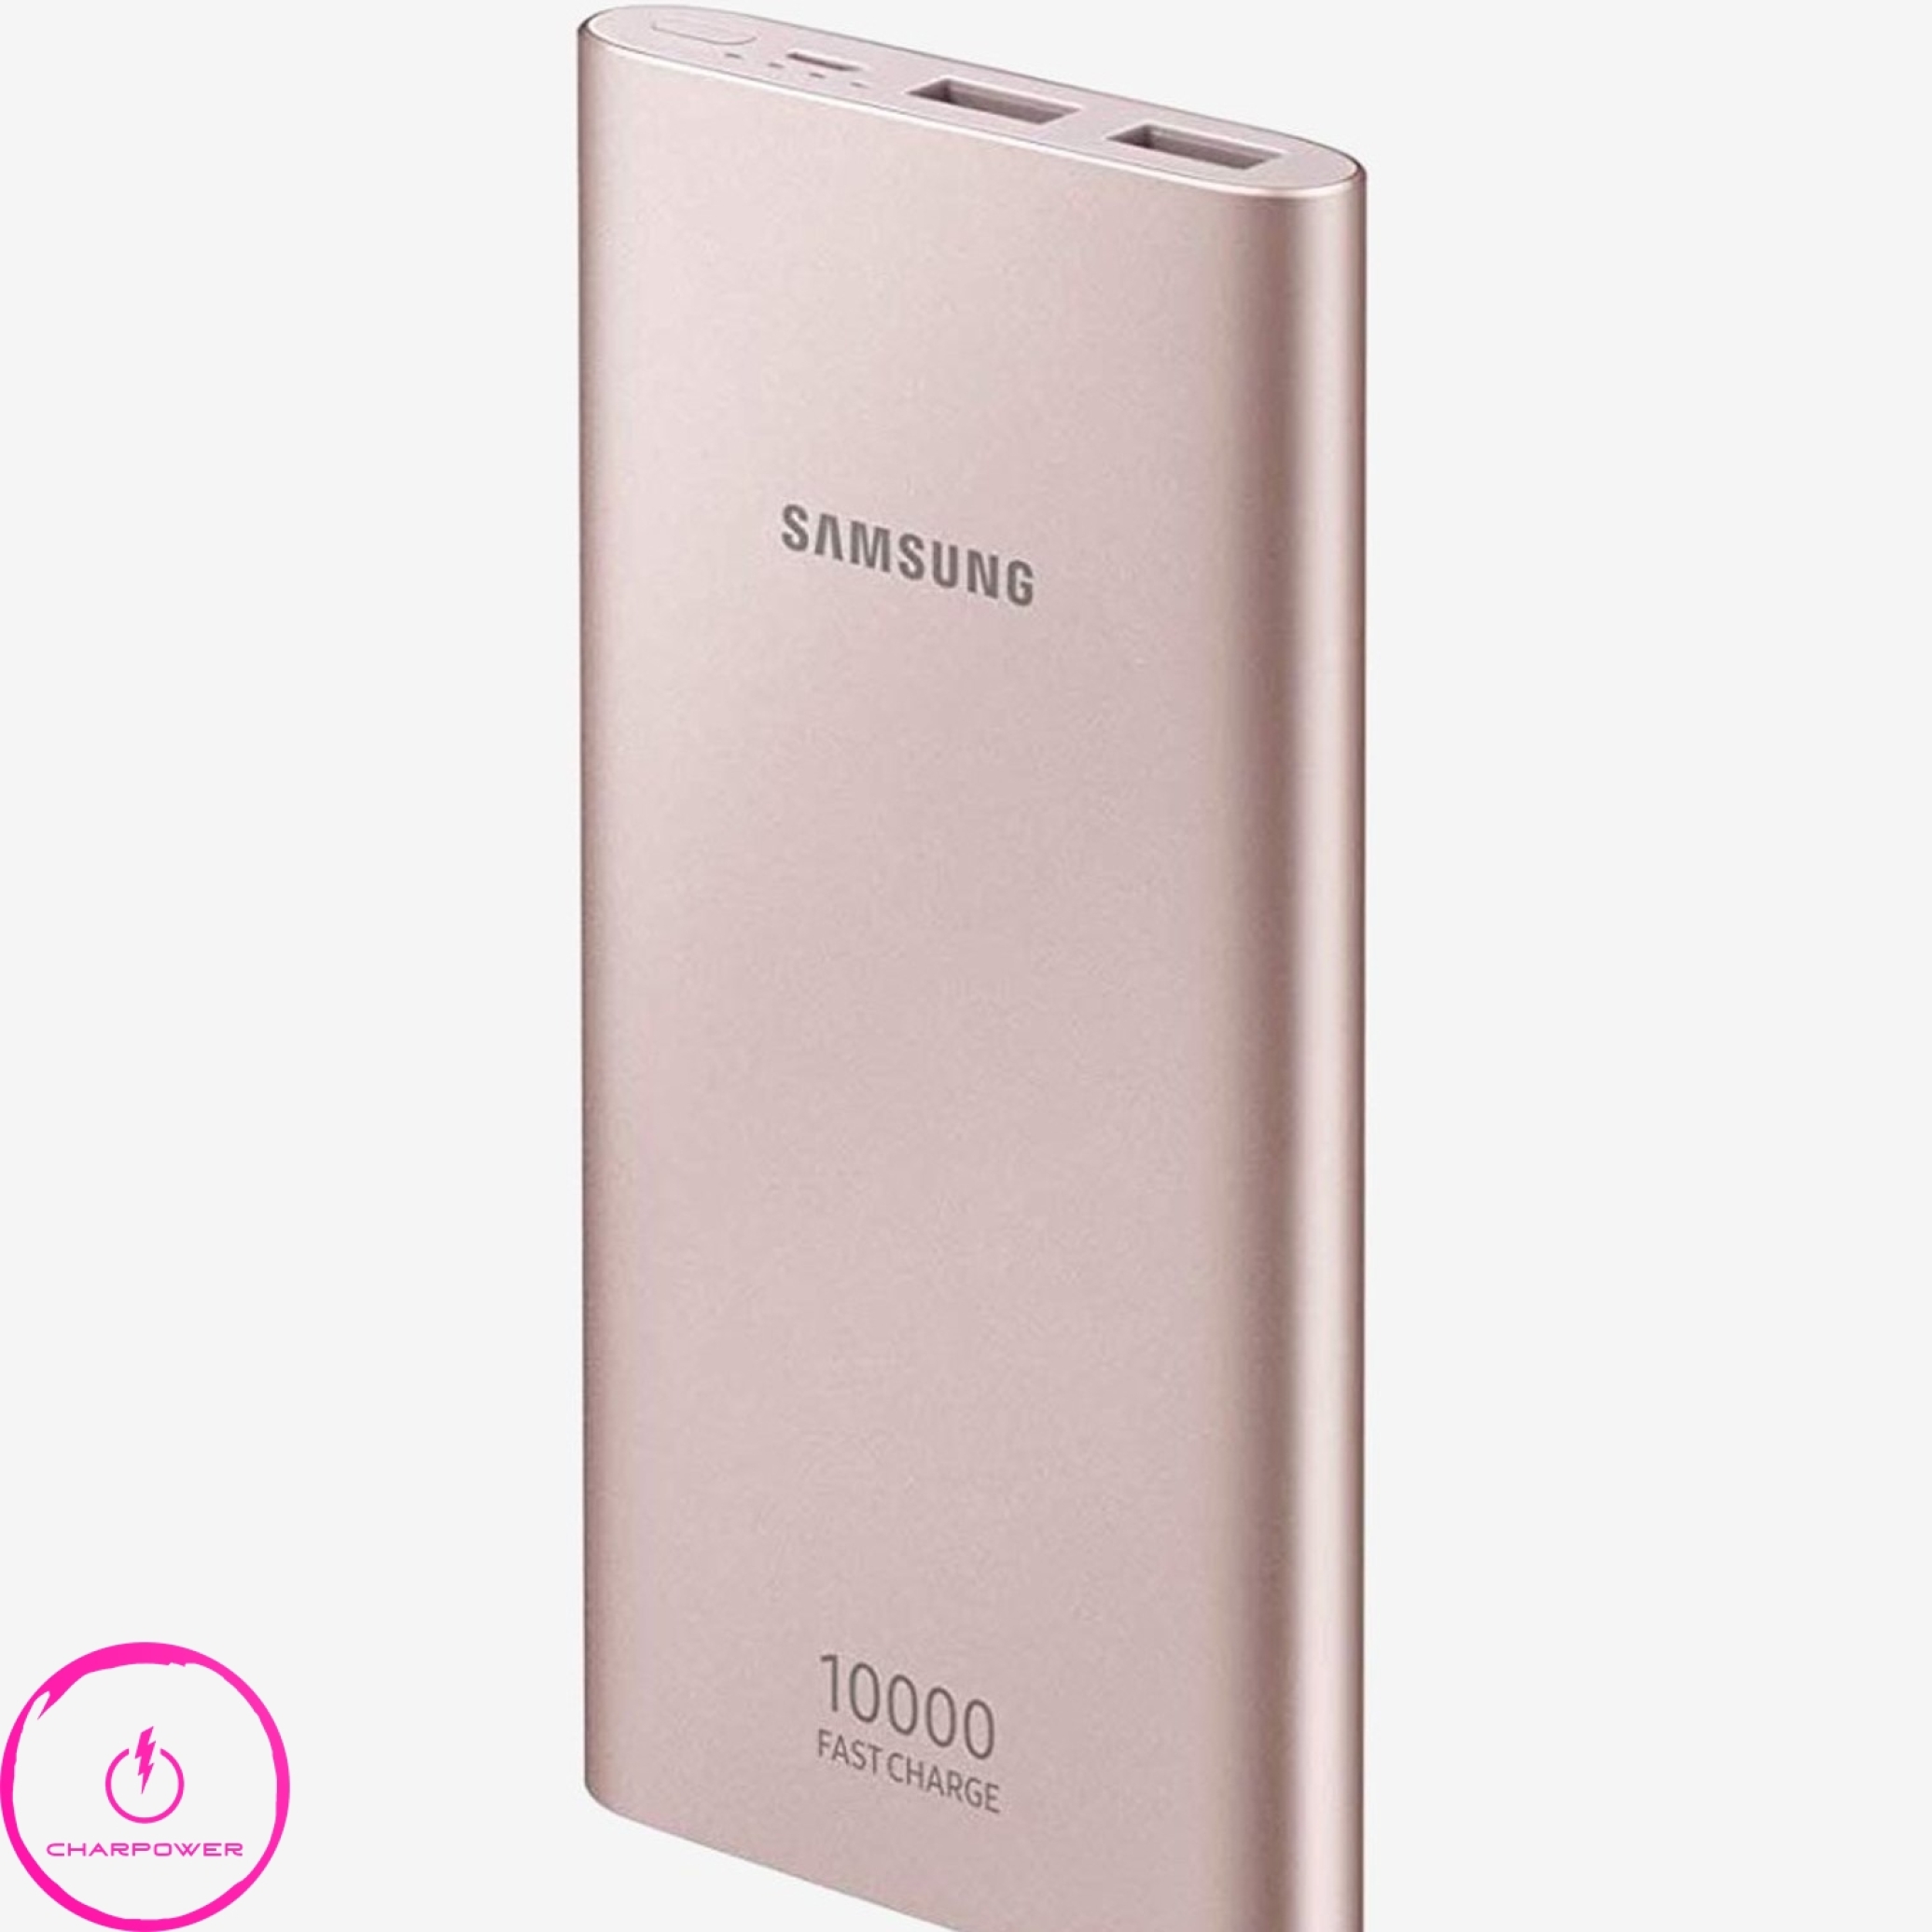  فروش پاوربانک سامسونگ Samsung مدل EB-P1100 ظرفیت 10000 توان 15 وات 